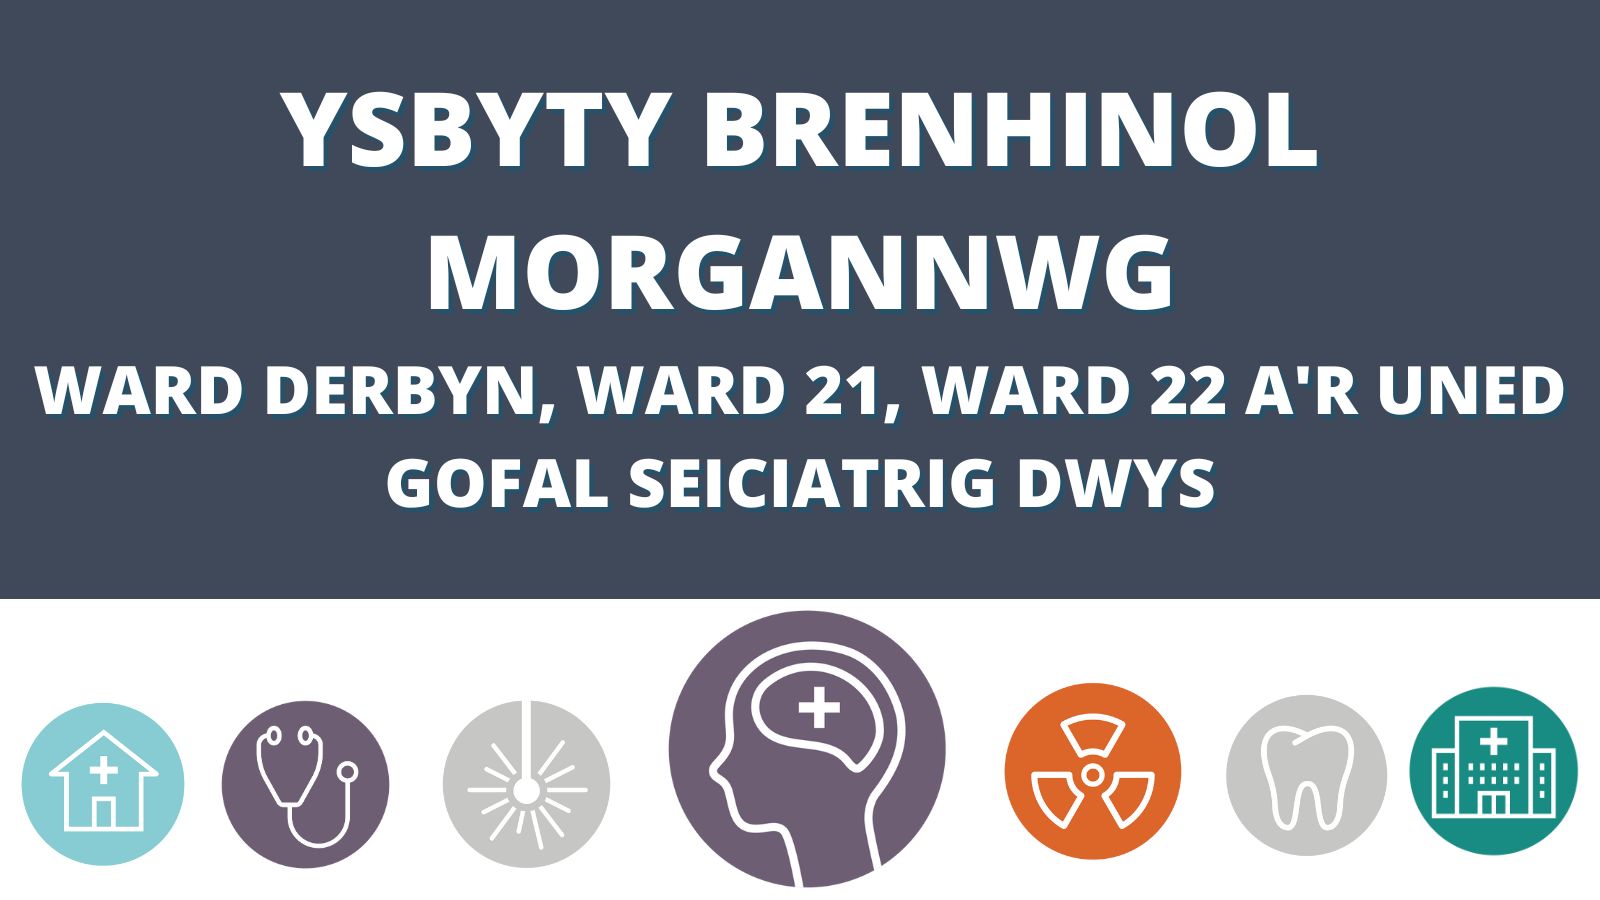 Ysbyty Brenhinol Morgannwg Ward derbyn, ward 21, ward 22 ac uned Gofal Seiciatrig Dwys 